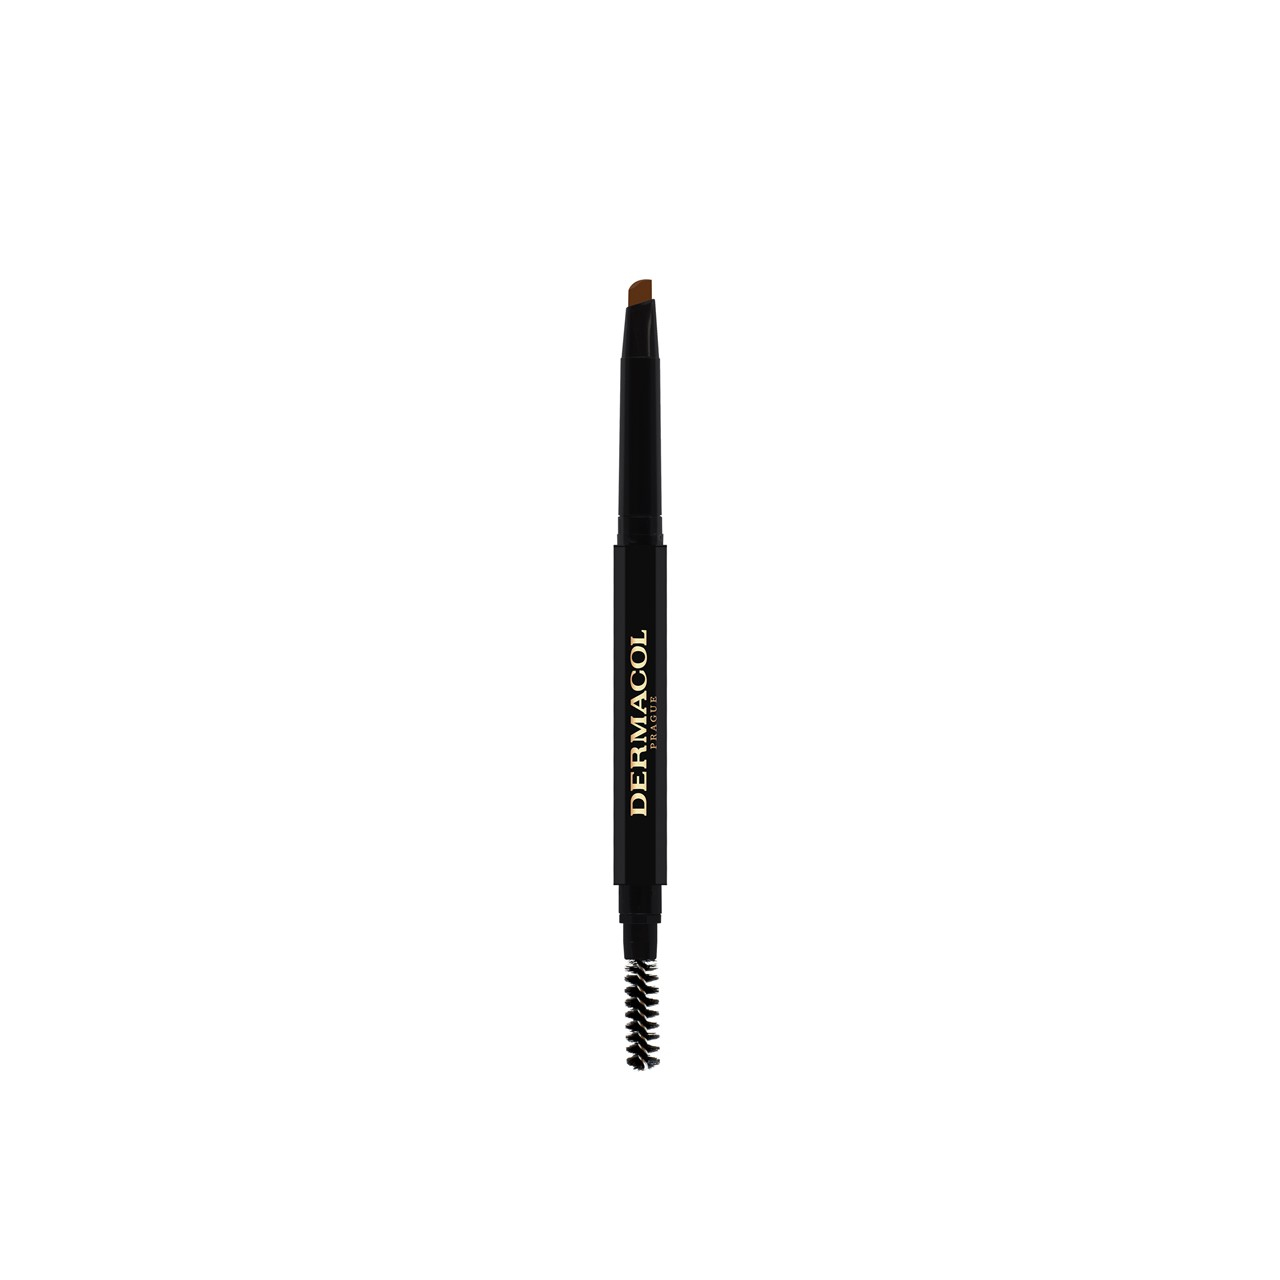 Dermacol Eyebrow Perfector Pencil 02